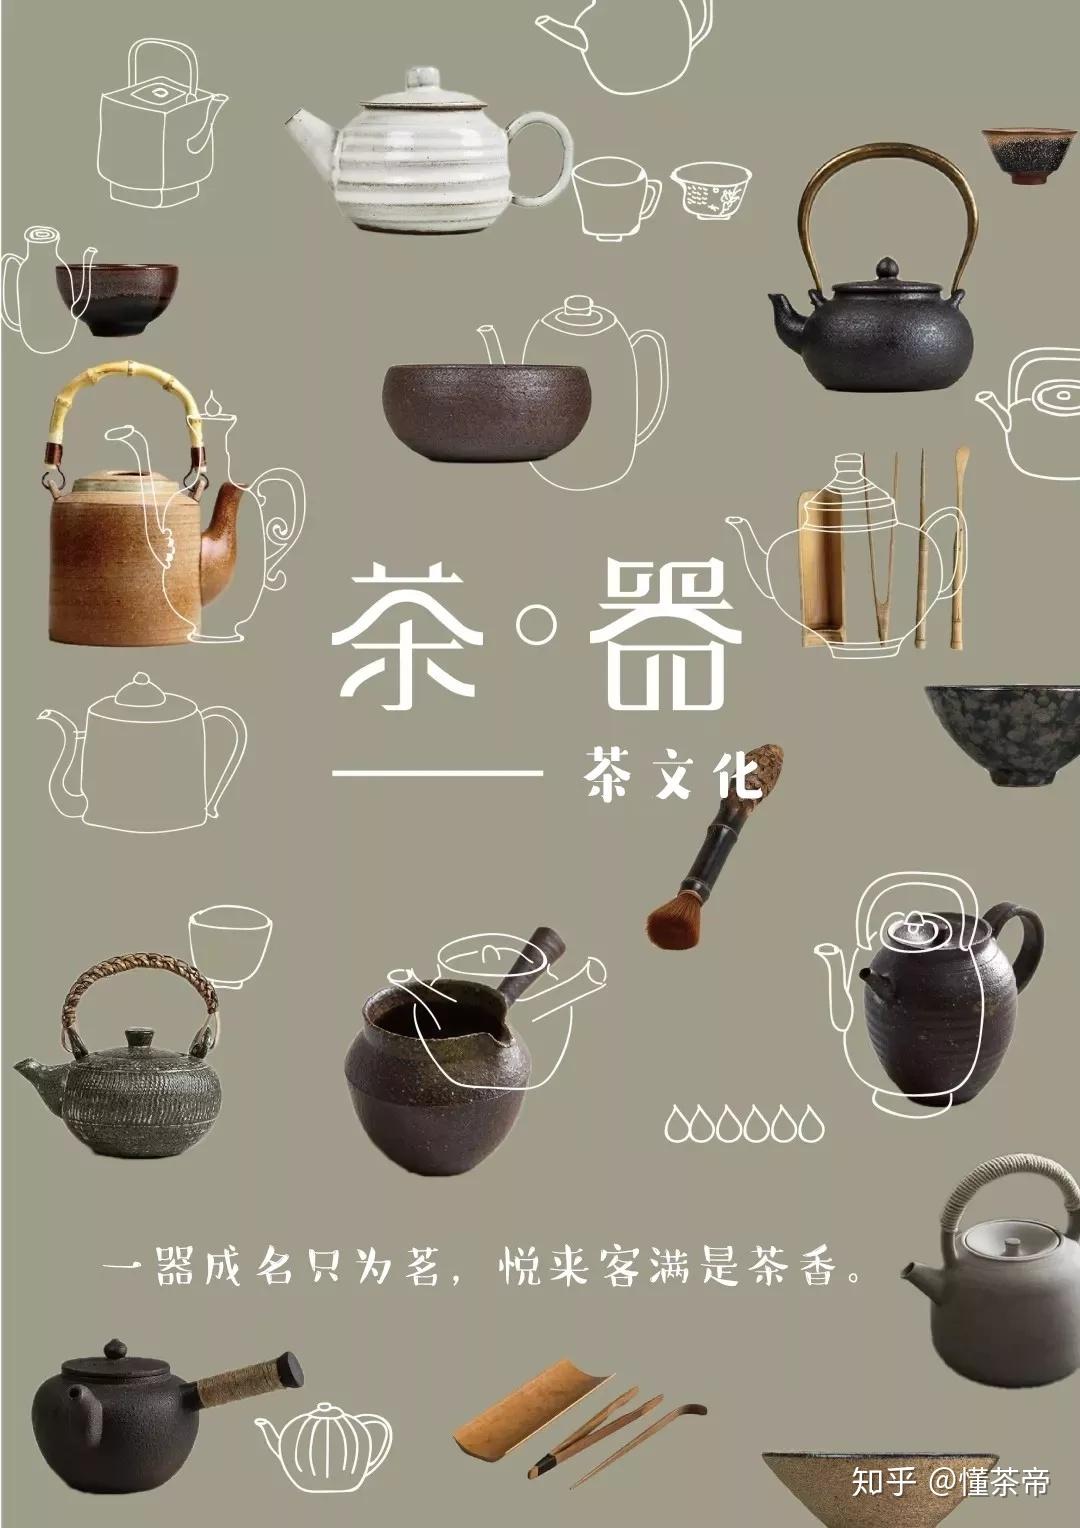 魅力あふれる日本文化、茶道とは？正しい作法やおもてなしの心を学ぼう | にほんご日和